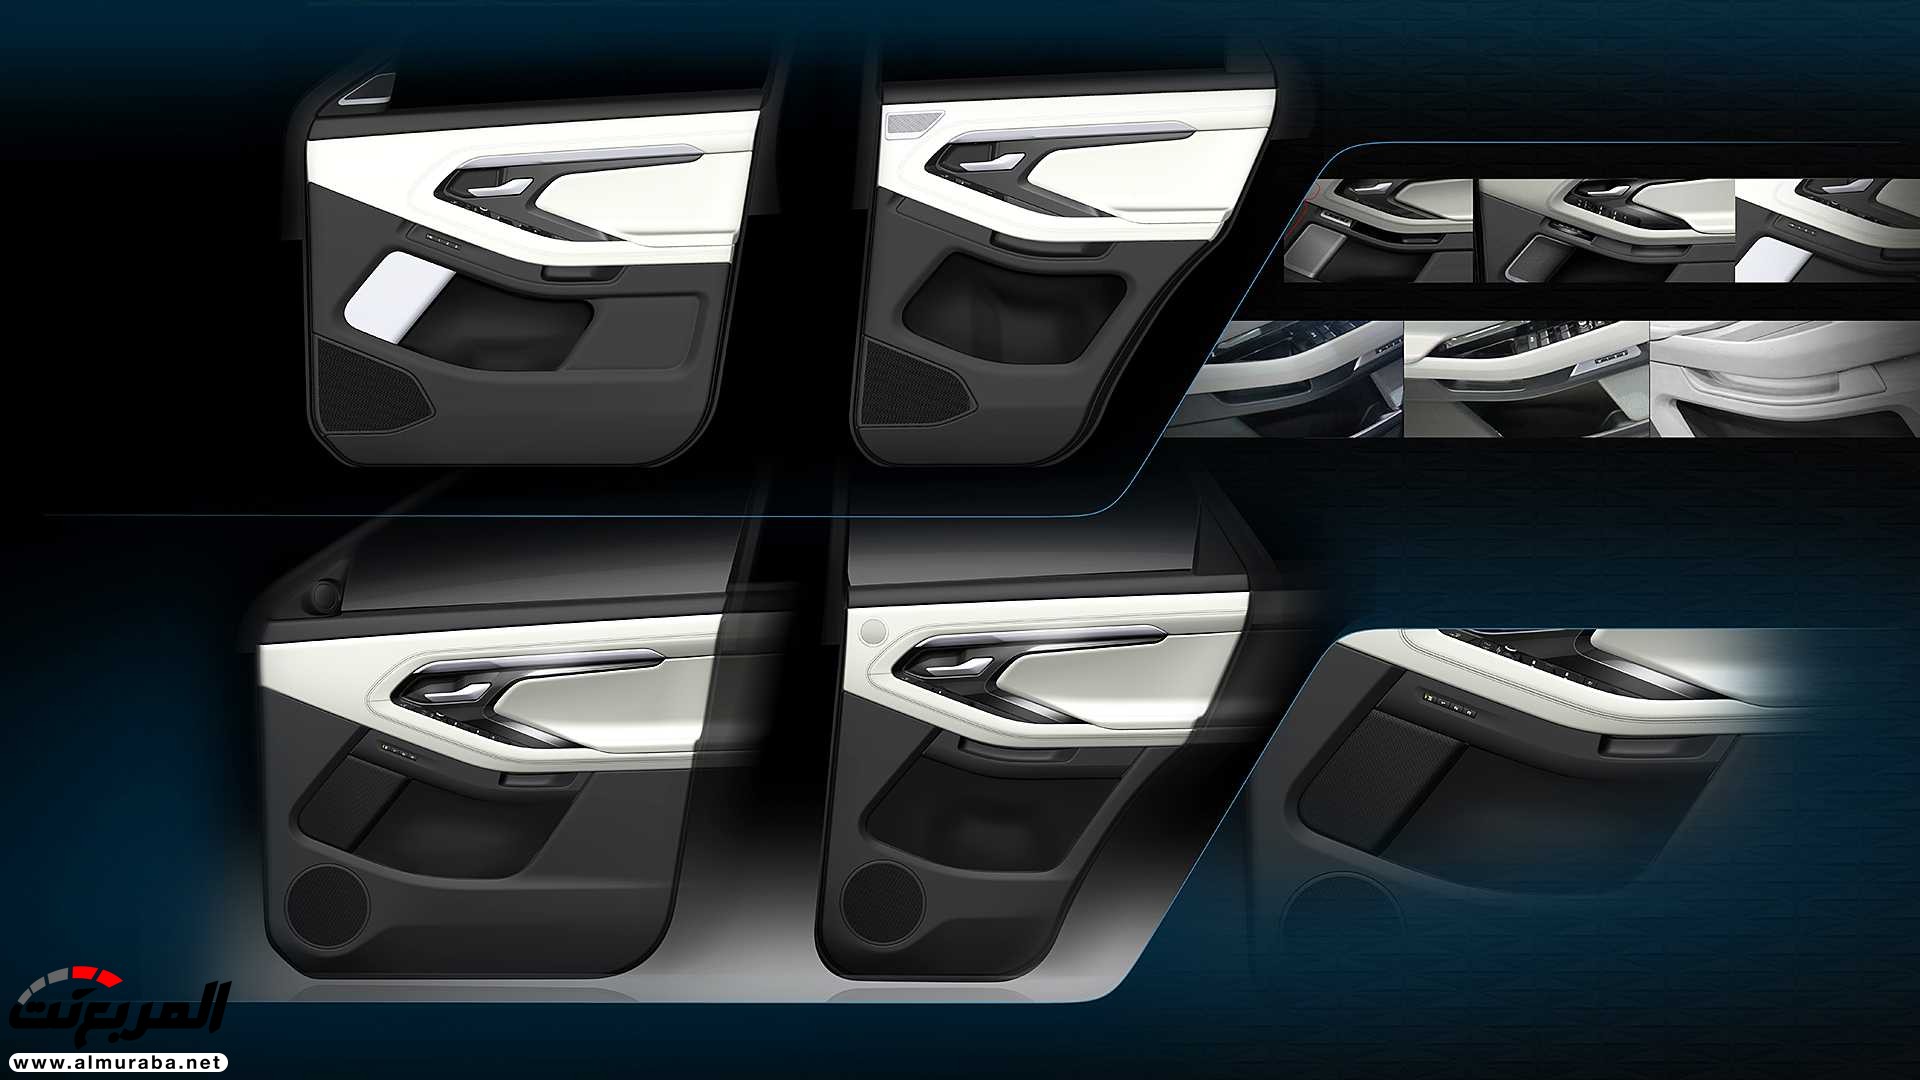 اهم 7 معلومات عن رنج روفر ايفوك 2020 الجديدة كلياً Range Rover Evoque 101